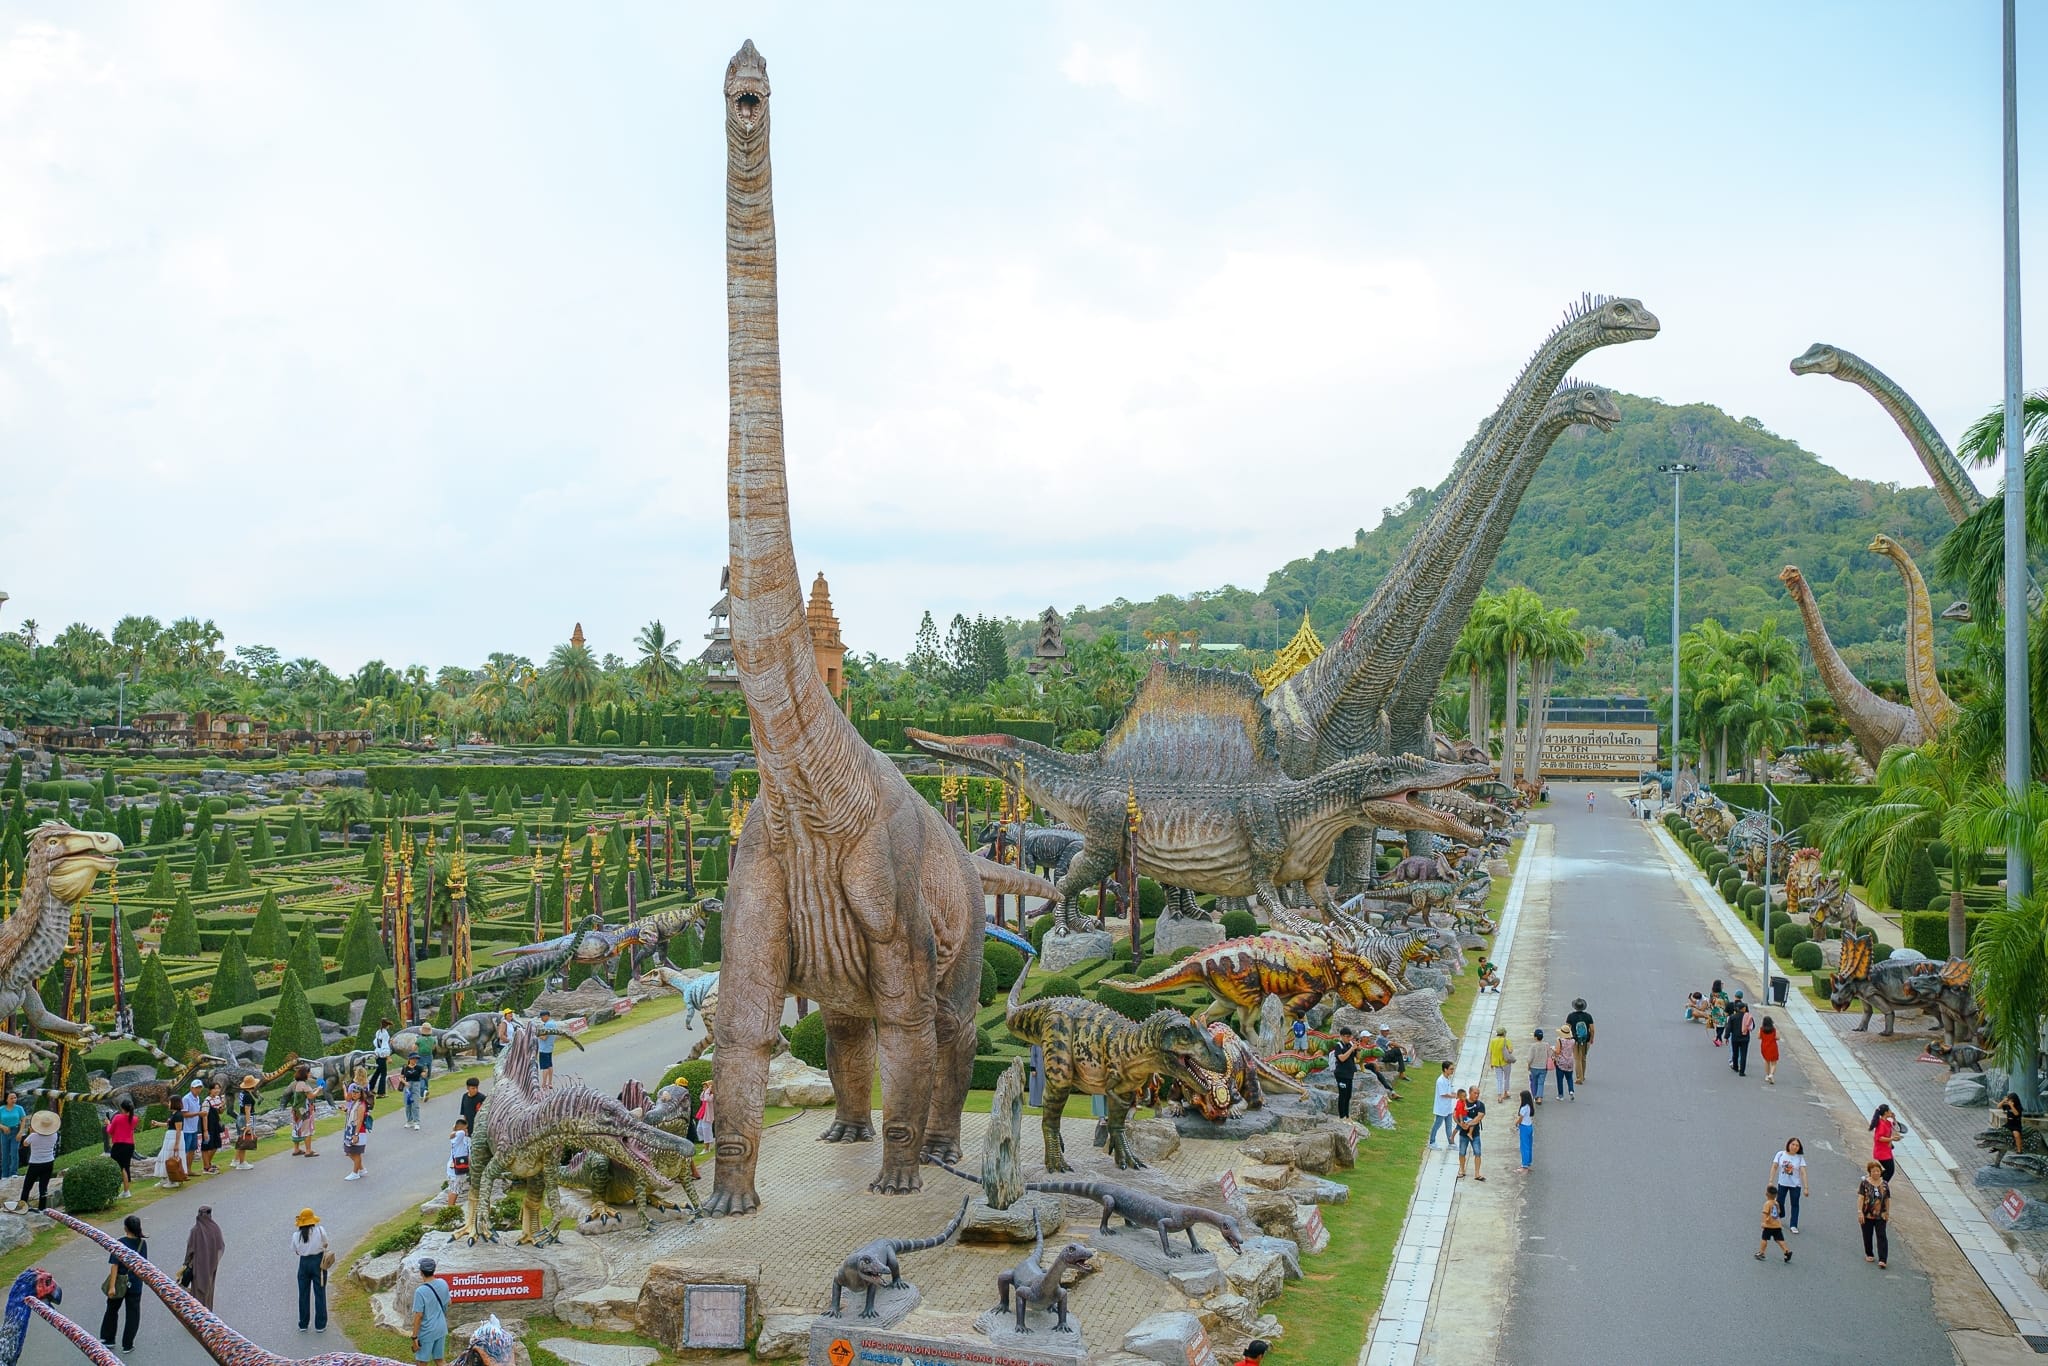 Dinosaur Night Run at Nong Nooch Garden attracts 3500 runners